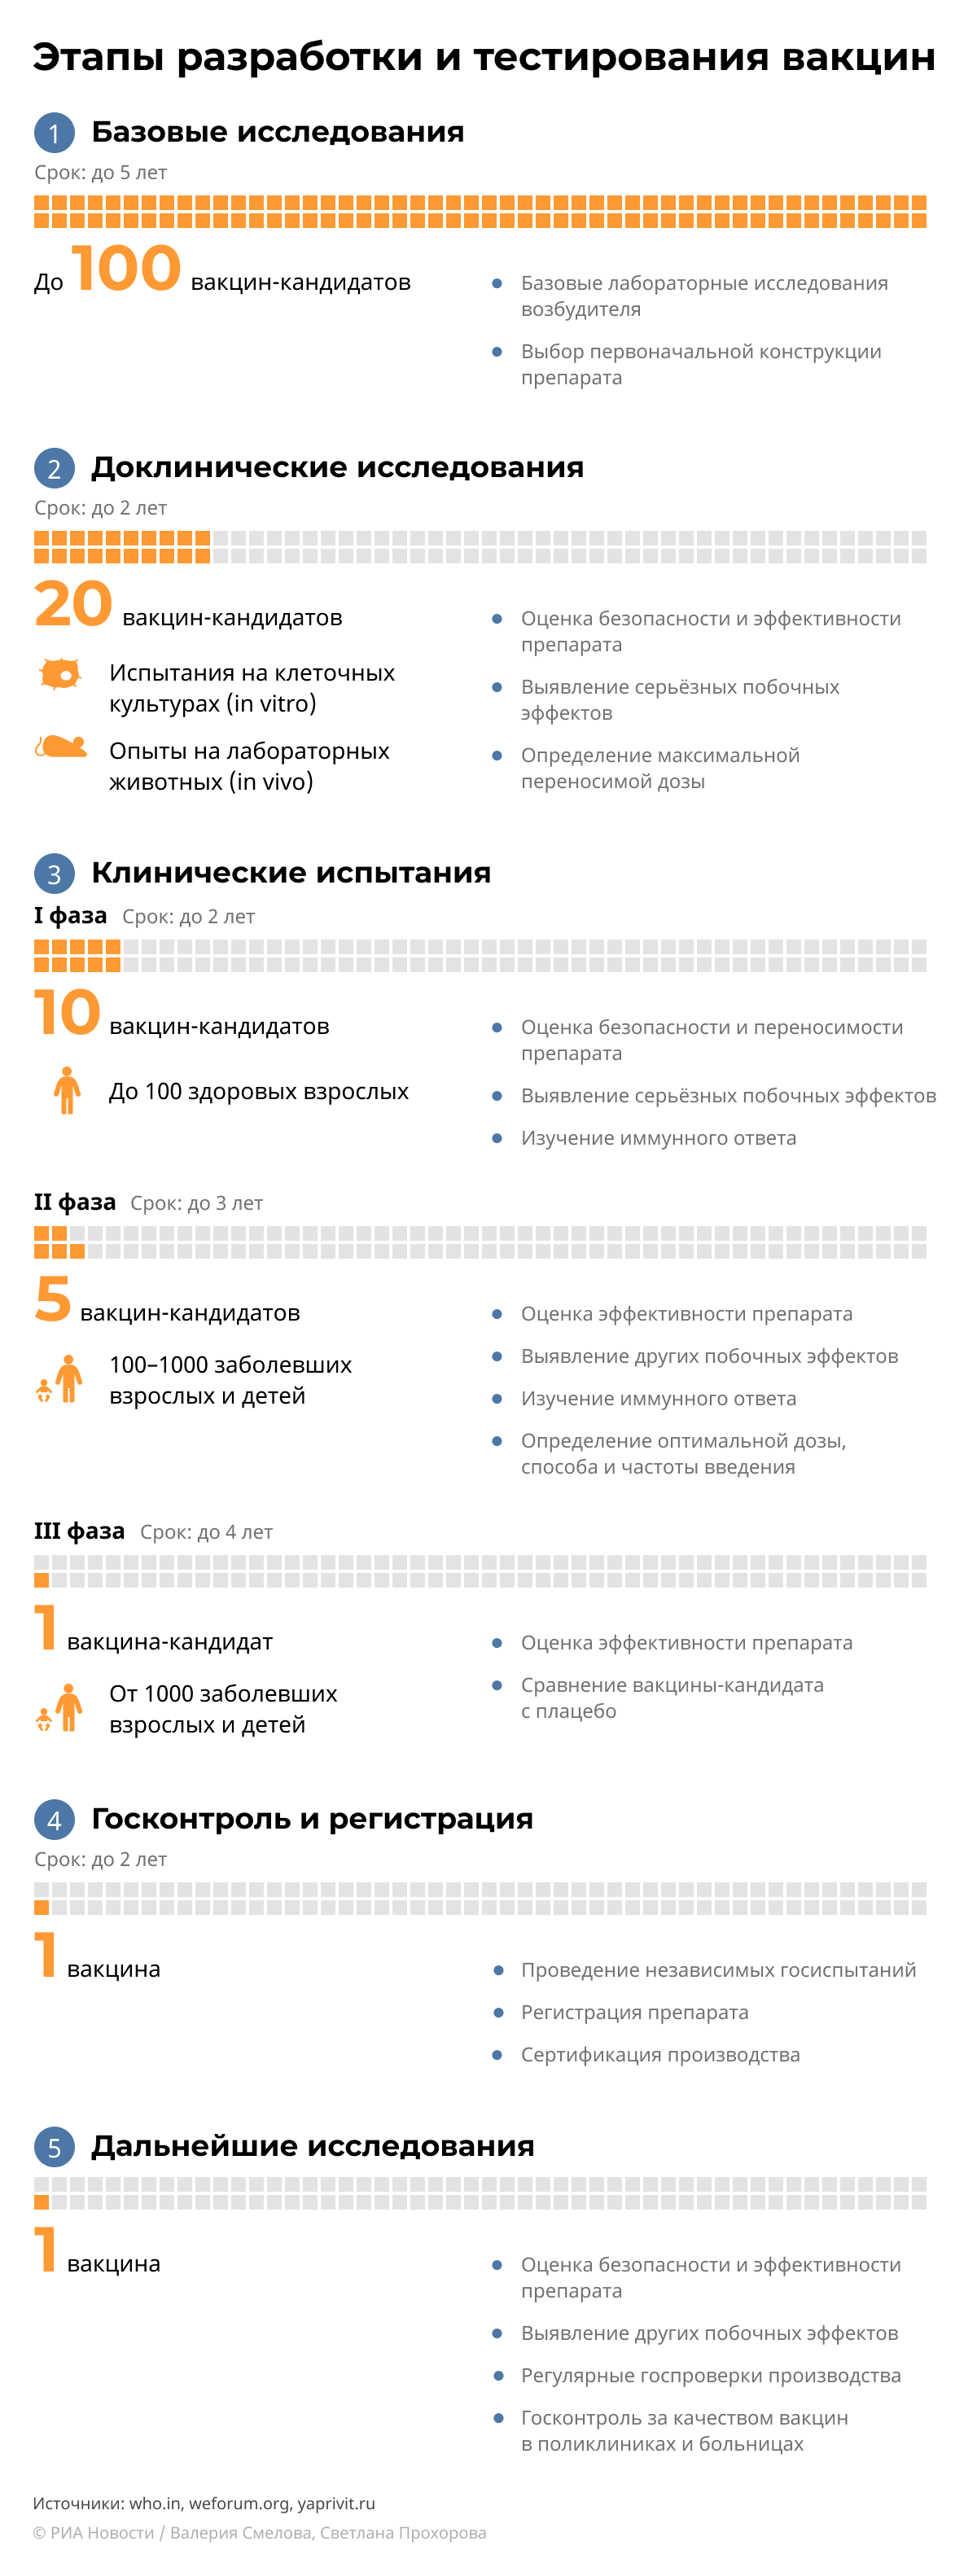 Инфографика: Как разрабатывают вакцины - Sputnik Азербайджан